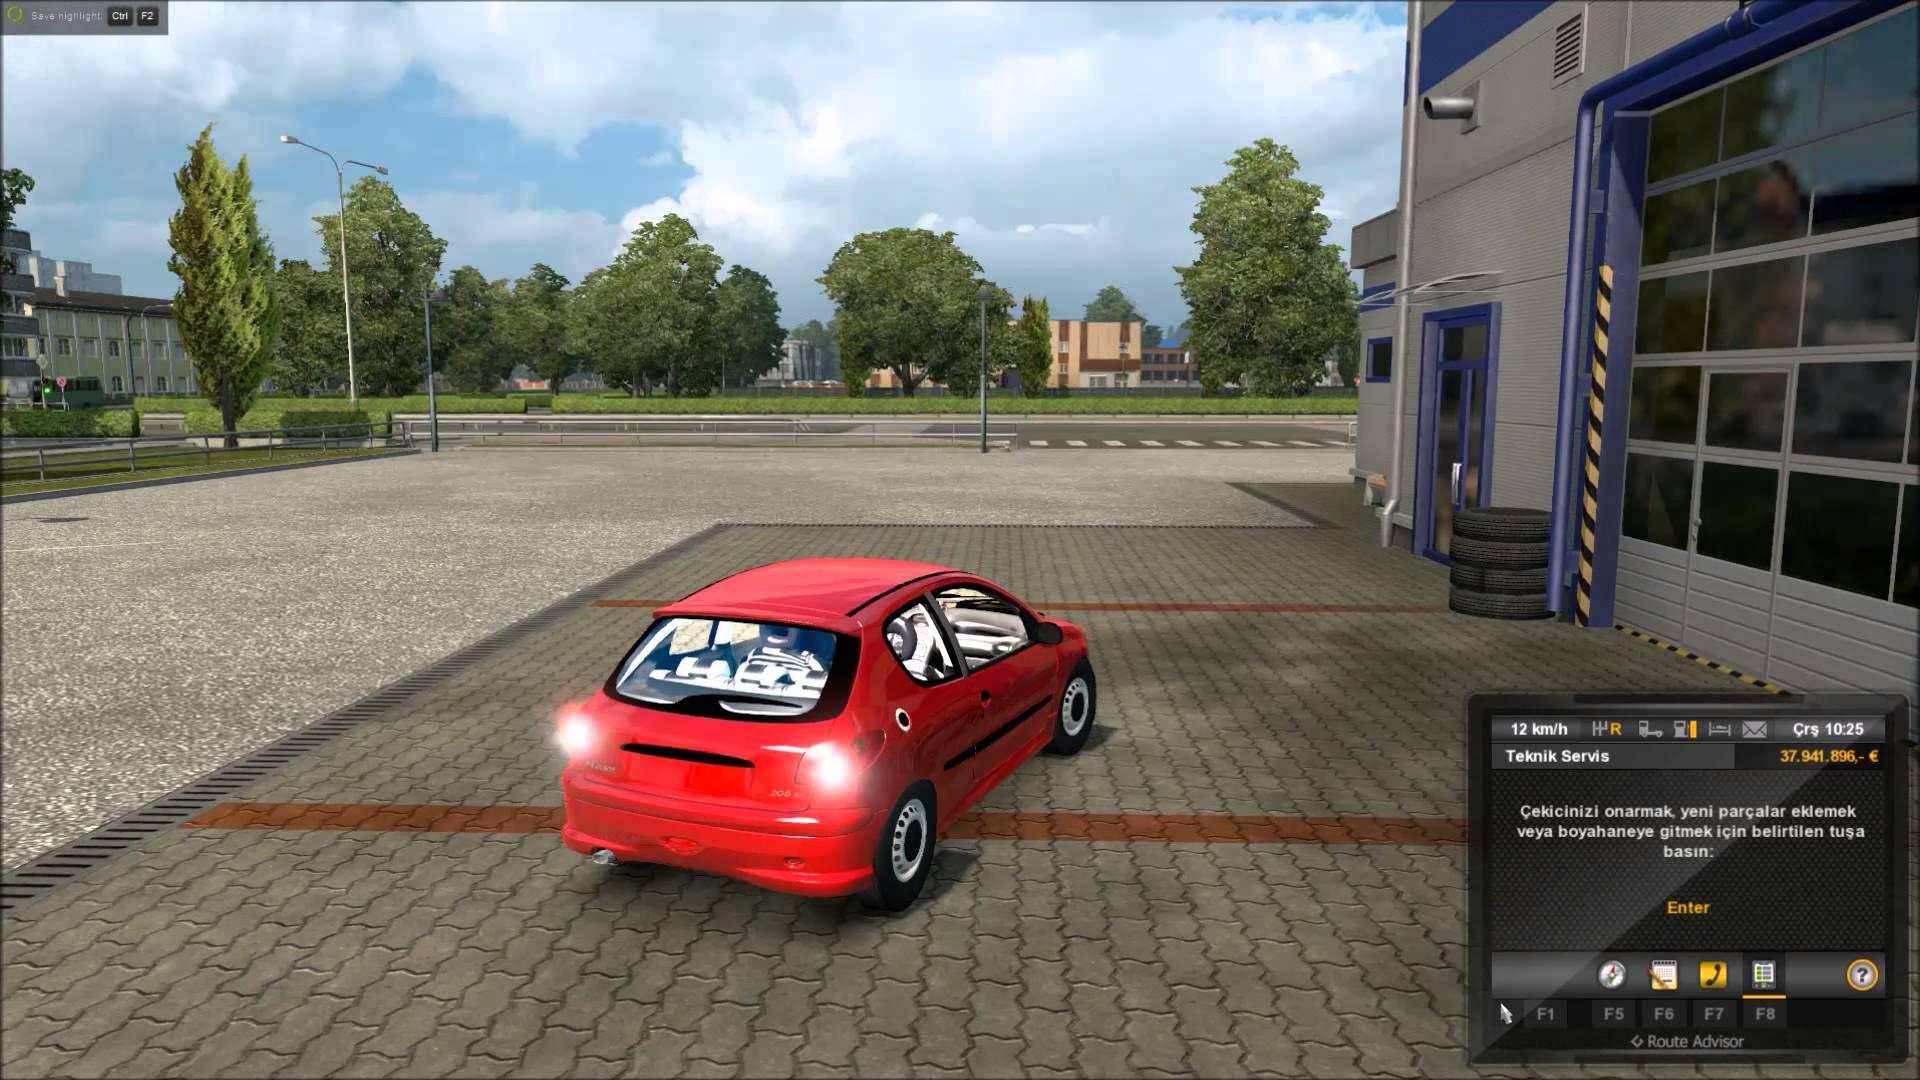 PEUGEOT 206 Car Euro Truck Simulator 2 Mods